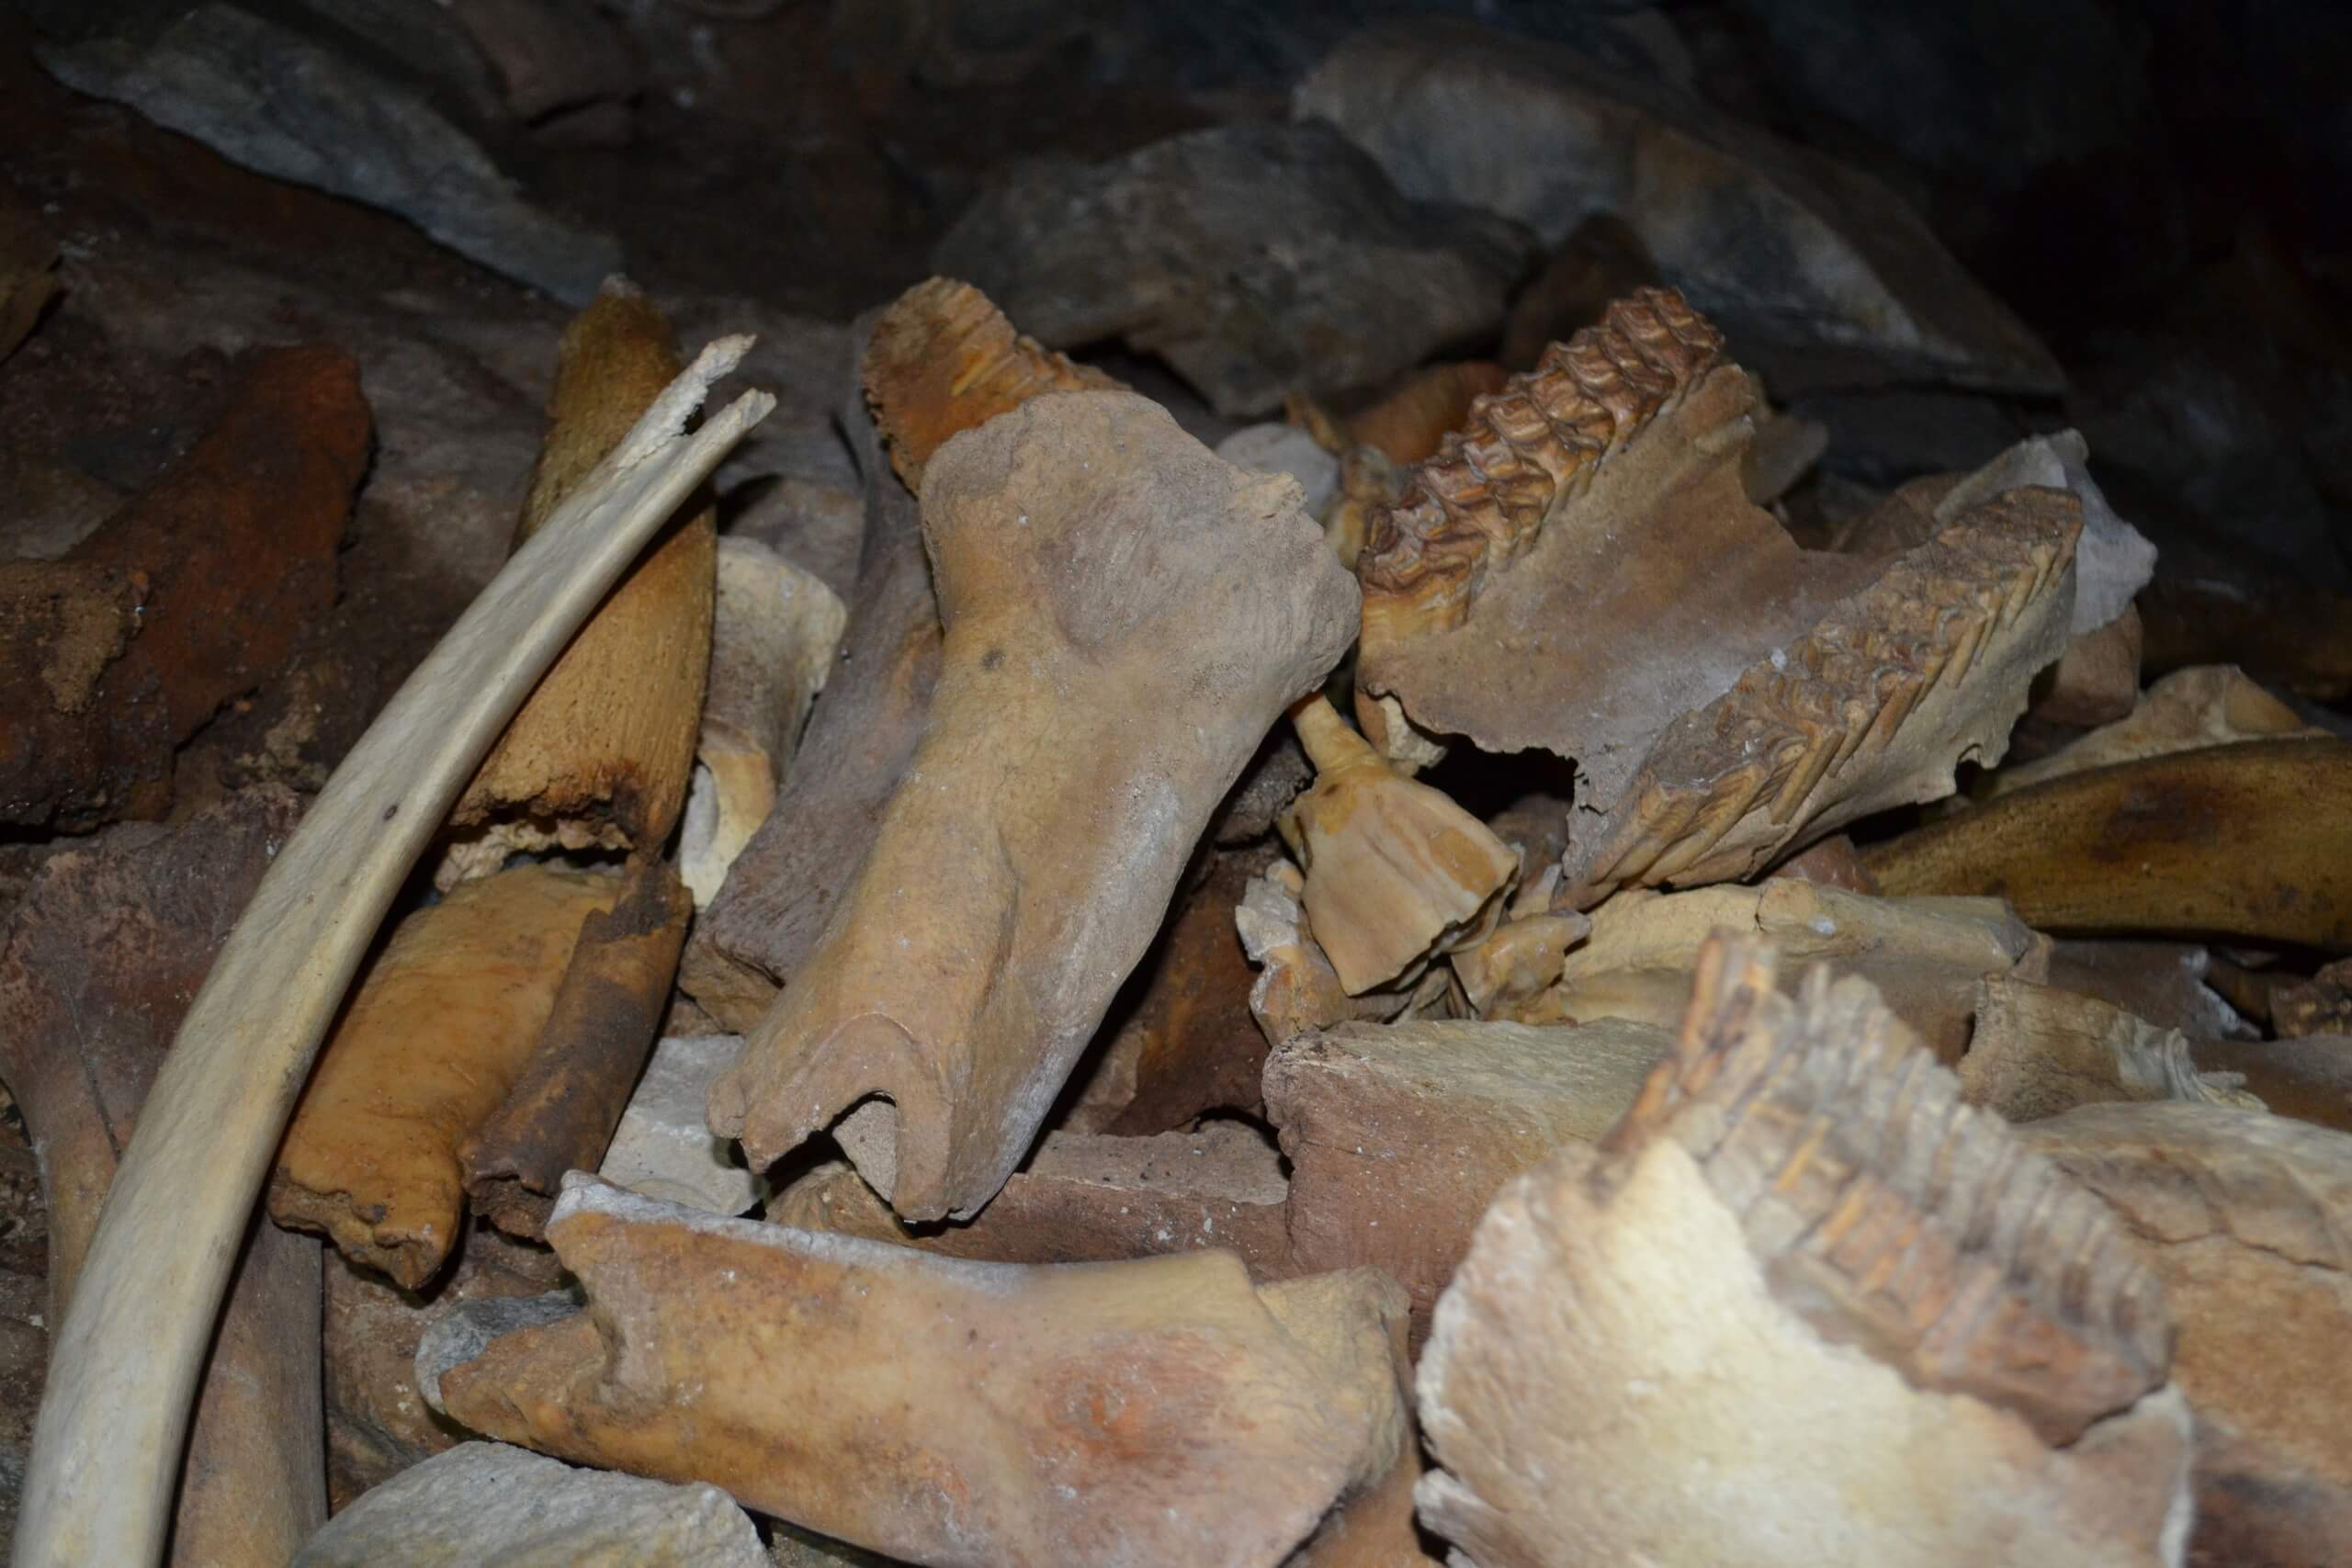 استخوان های کشف شده در داخل غار در سیبری قدمت 42,000 ساله دارند. (اعتبار تصویر: موسسه زمین شناسی و کانی شناسی VS Sobolev)